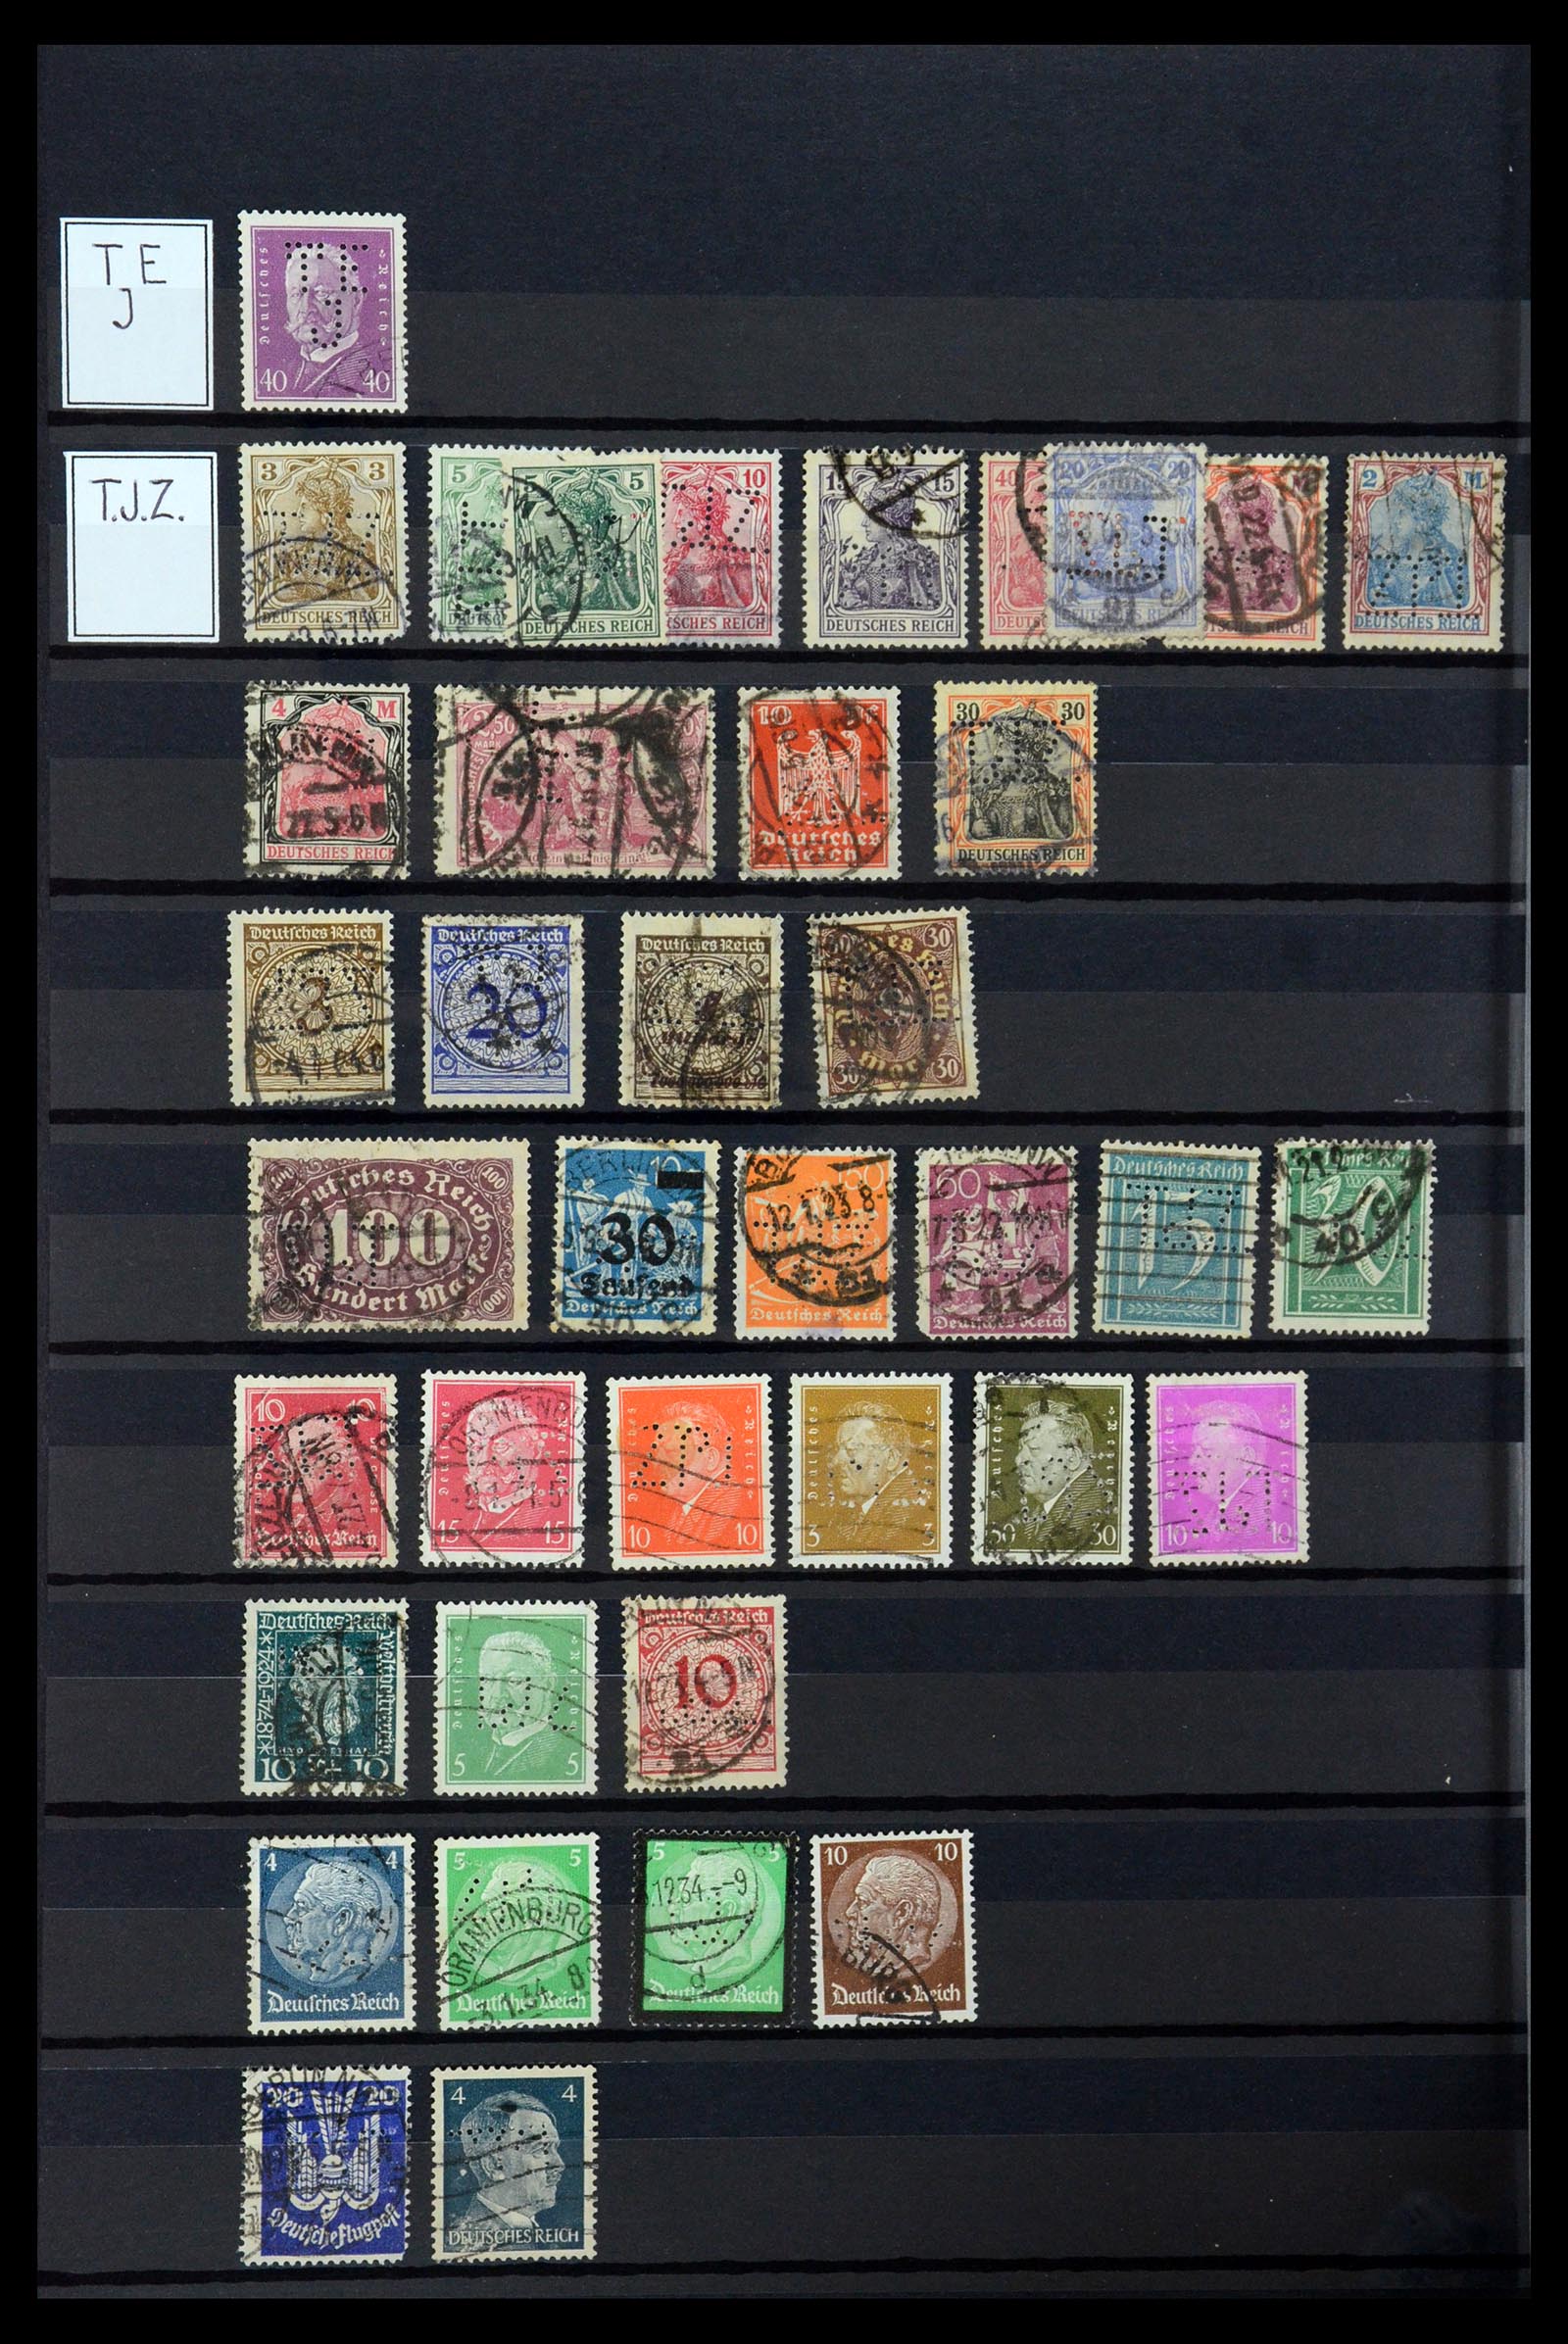 36405 313 - Stamp collection 36405 German Reich perfins 1880-1945.